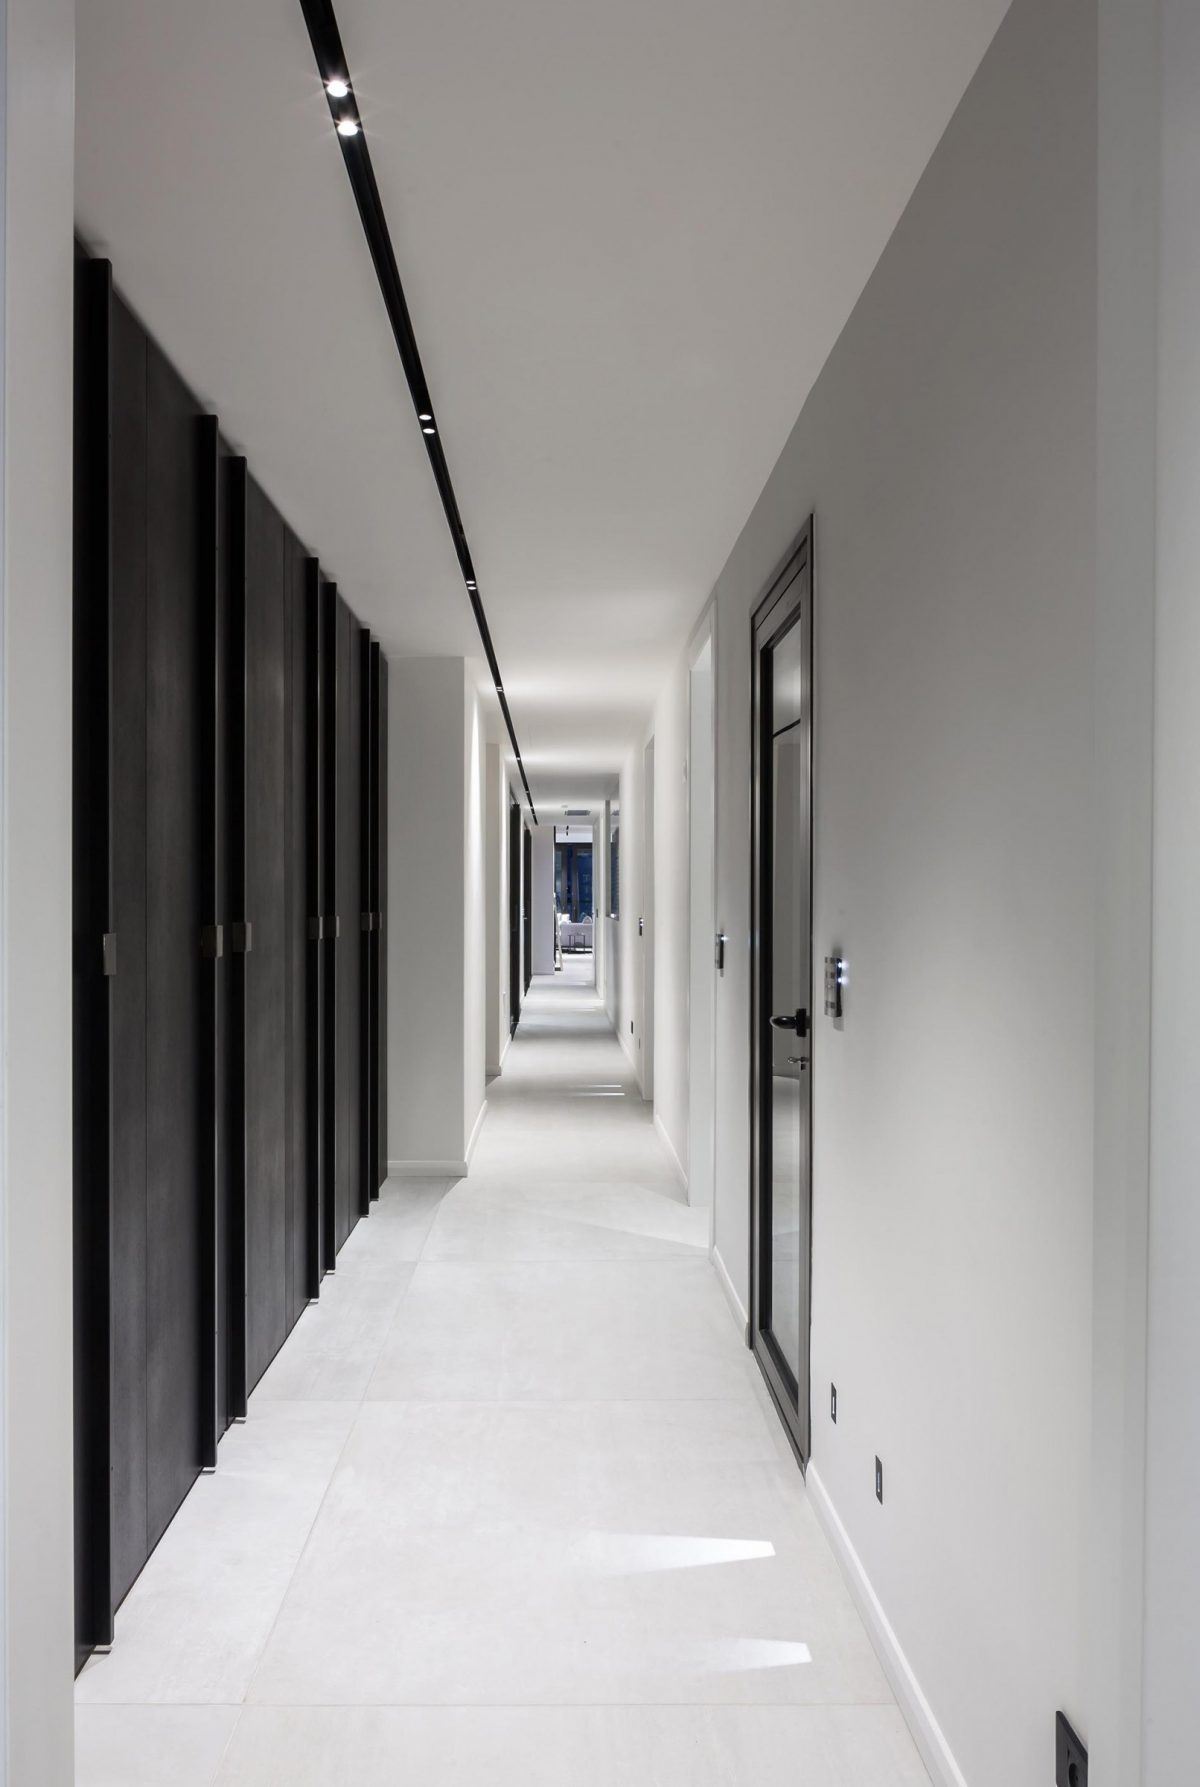 Penthouse Carmelit עיצוב התאורה במסדרון על ידי דורי קמחי